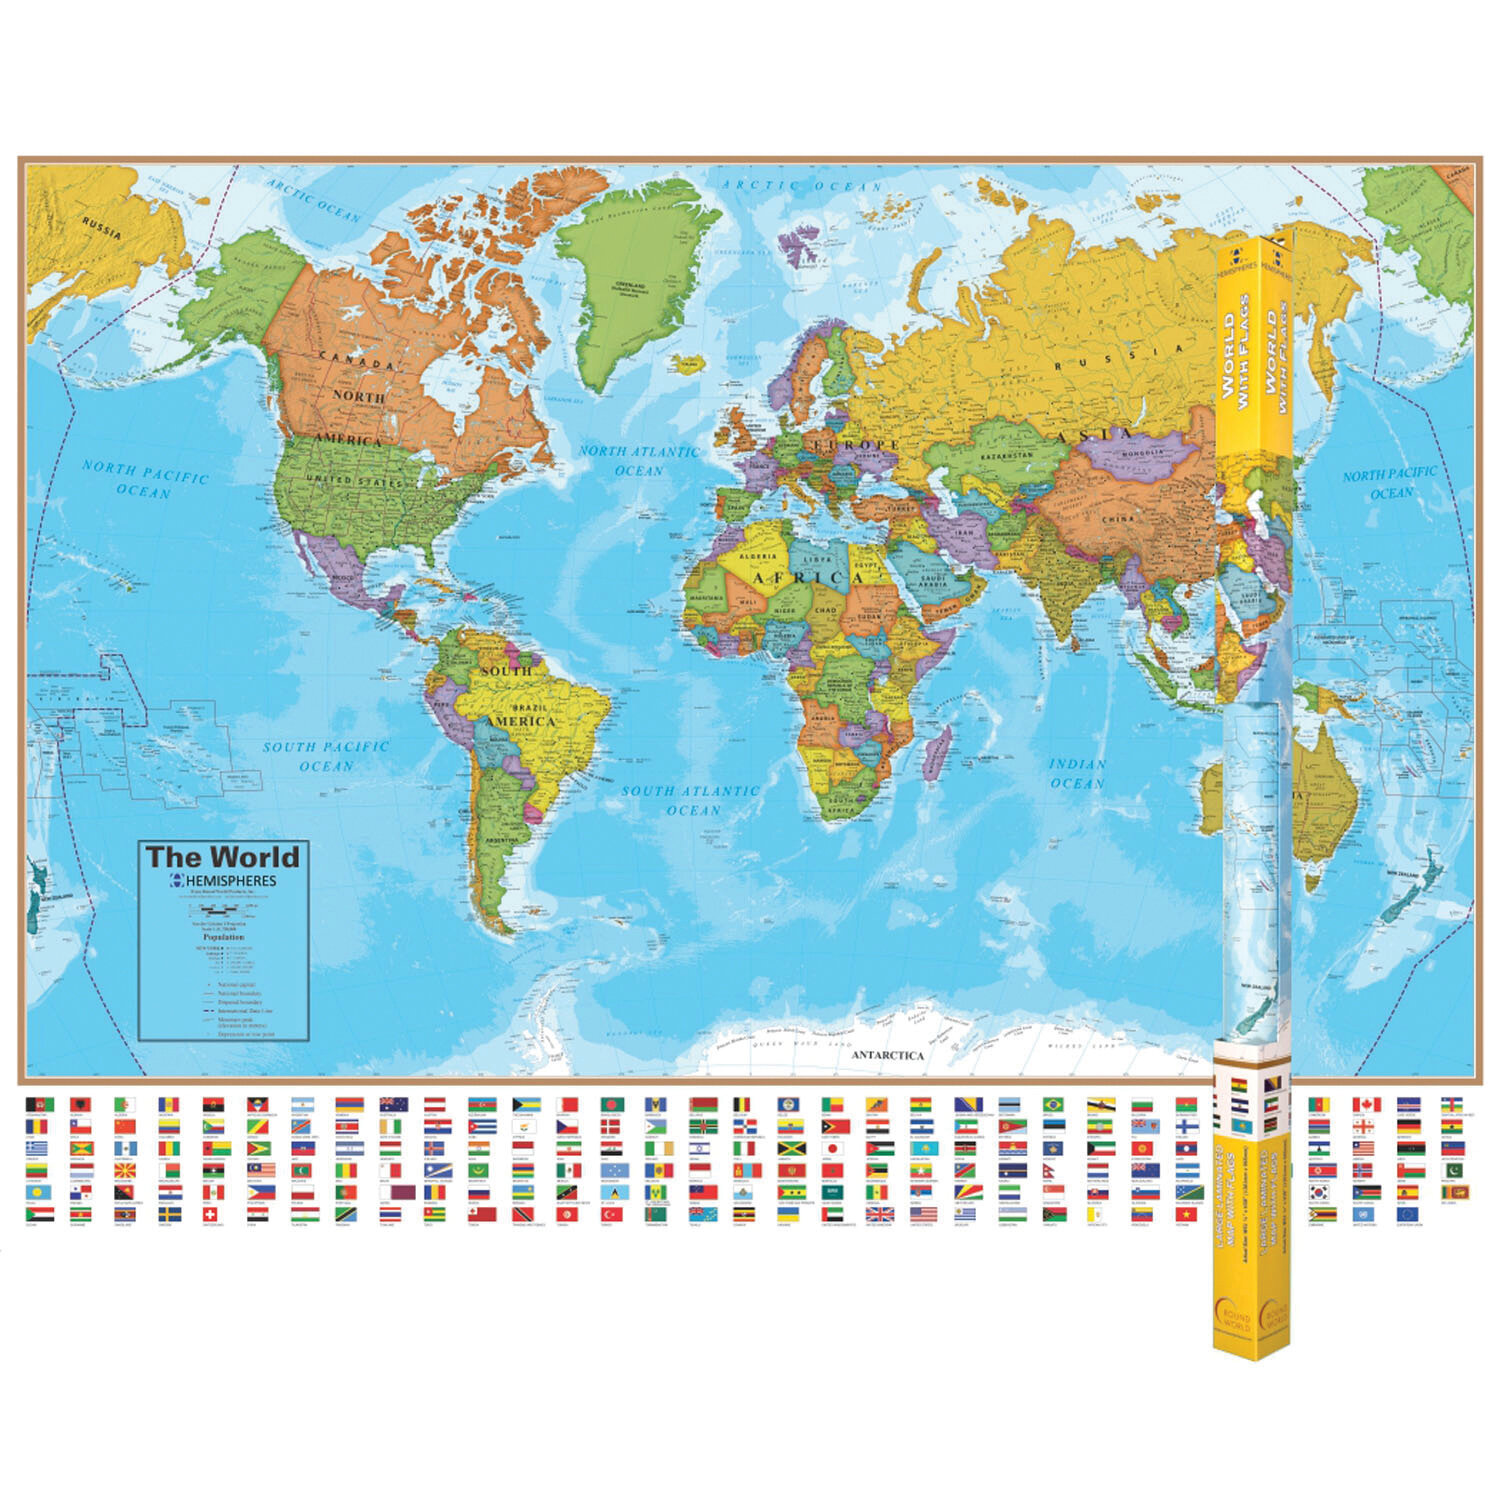 Babillard en liège avec carte du monde